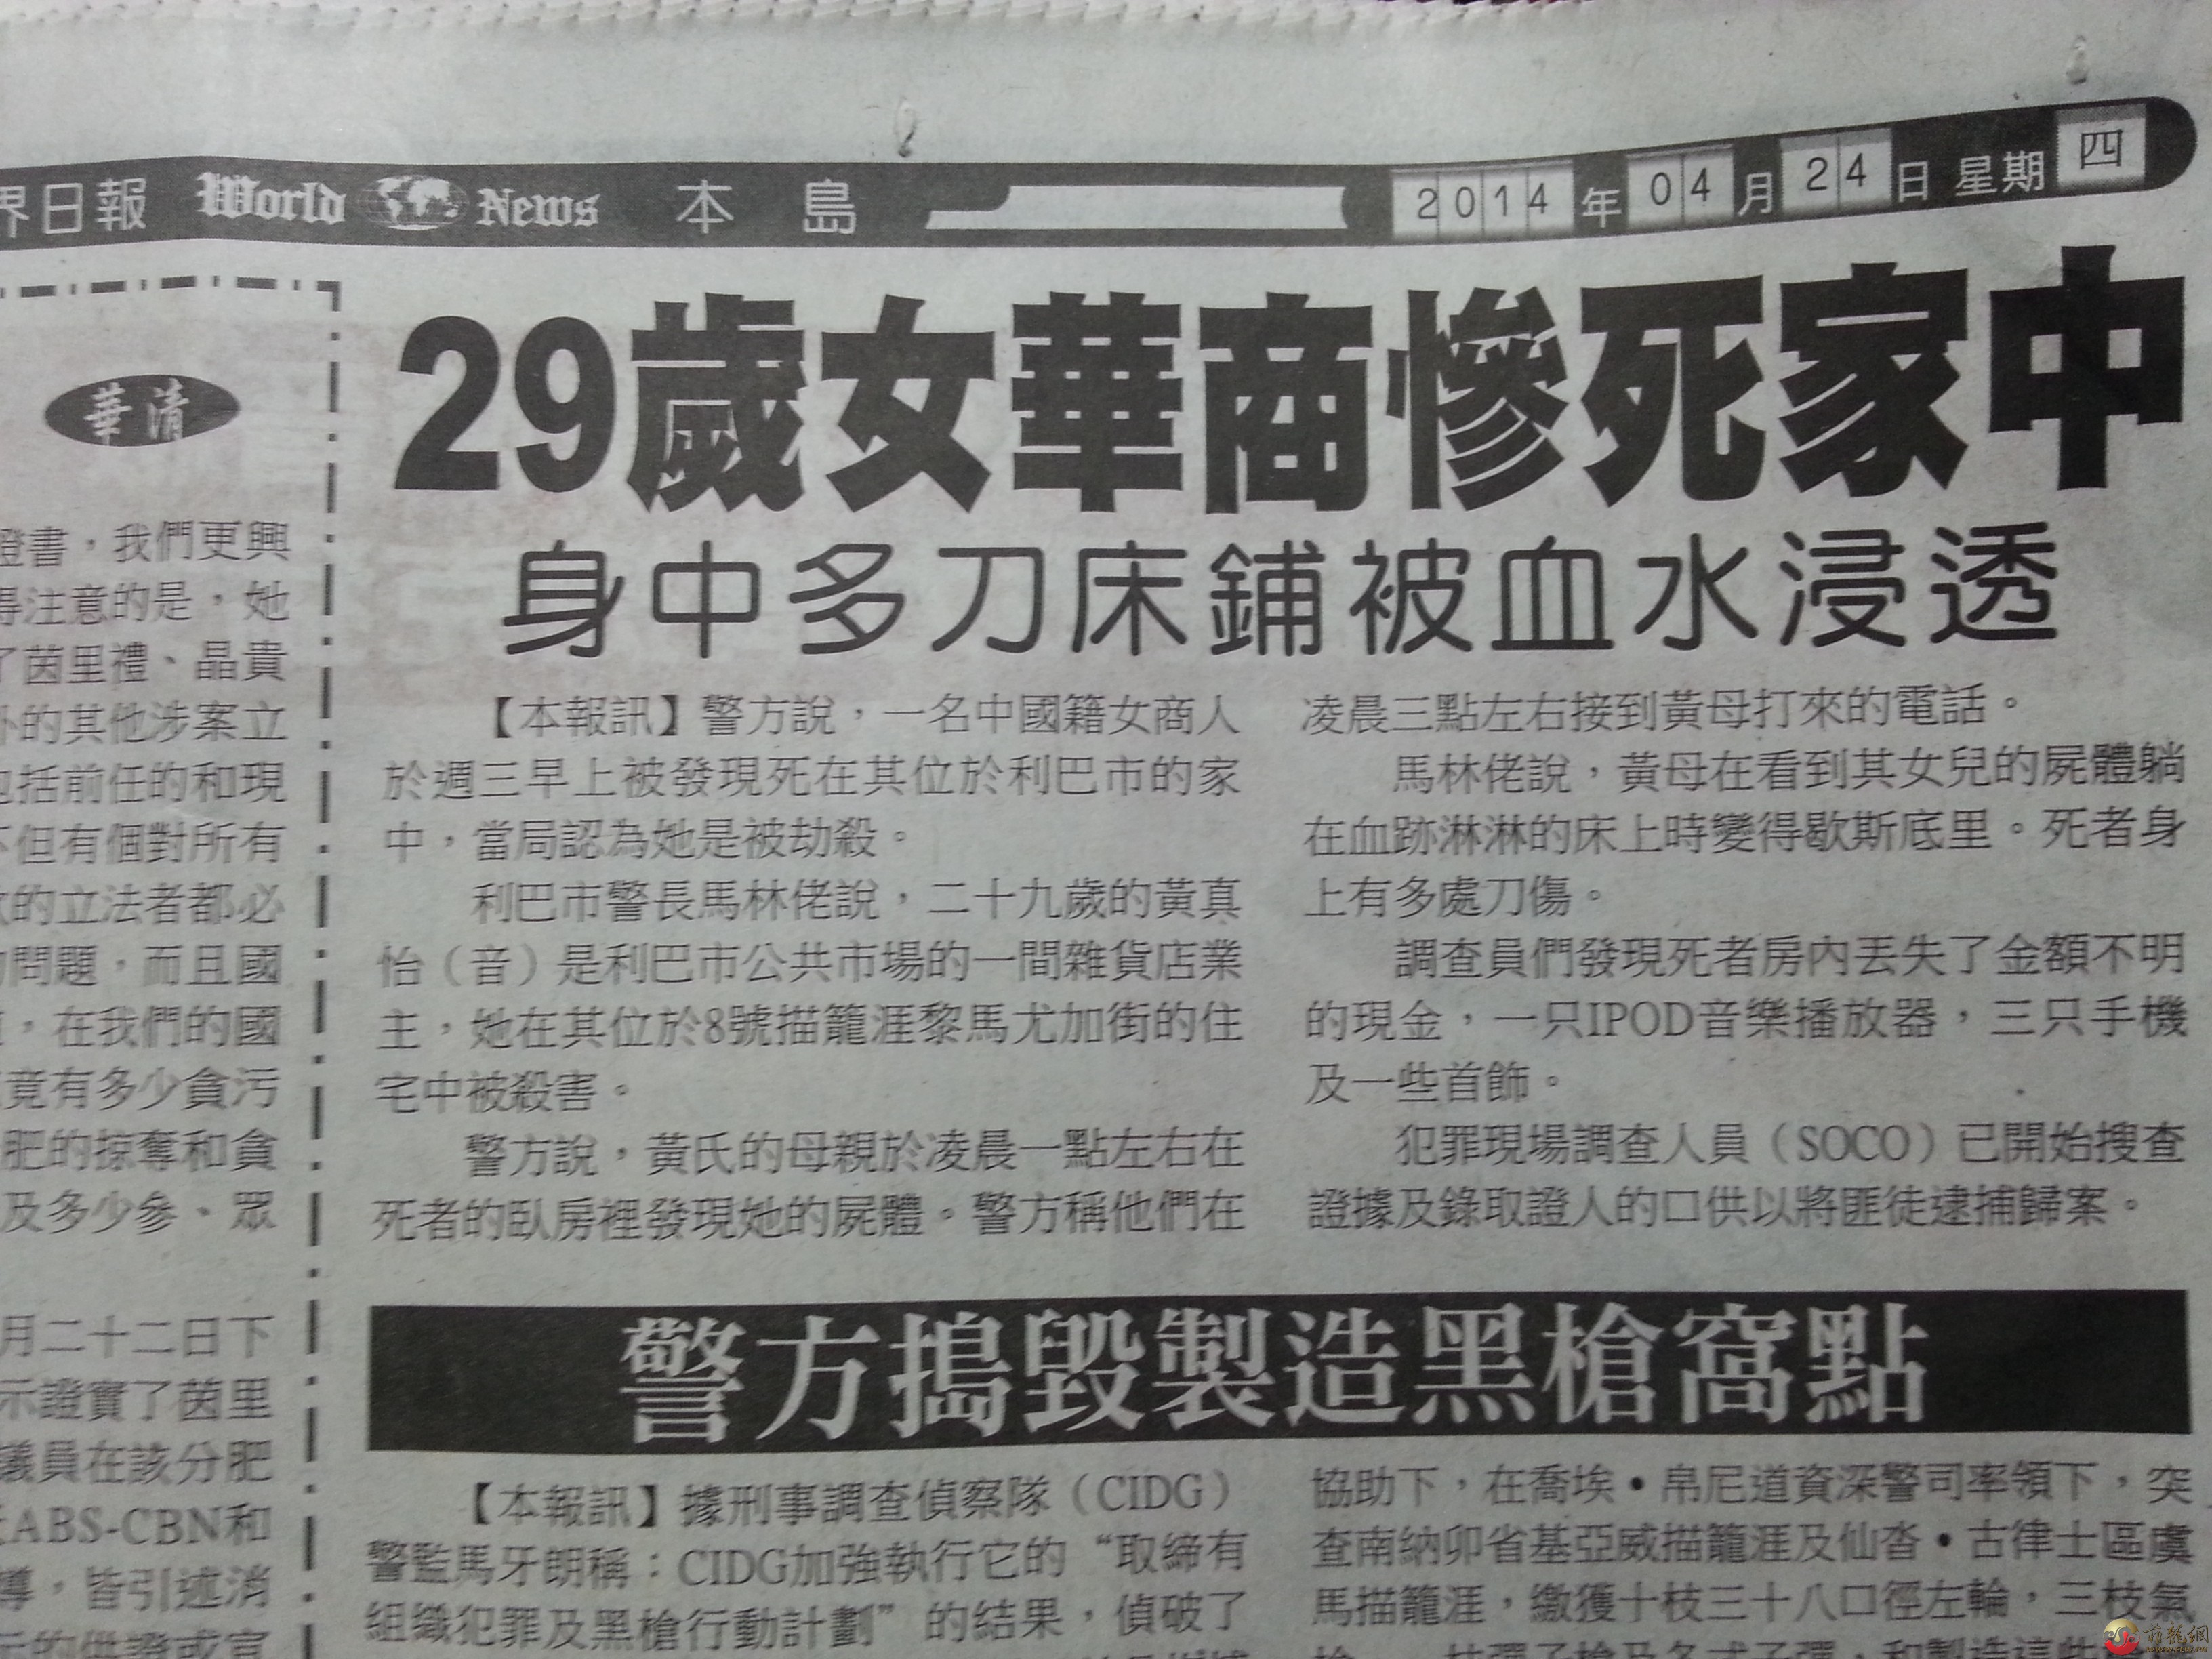 世界日报 4-24-2014